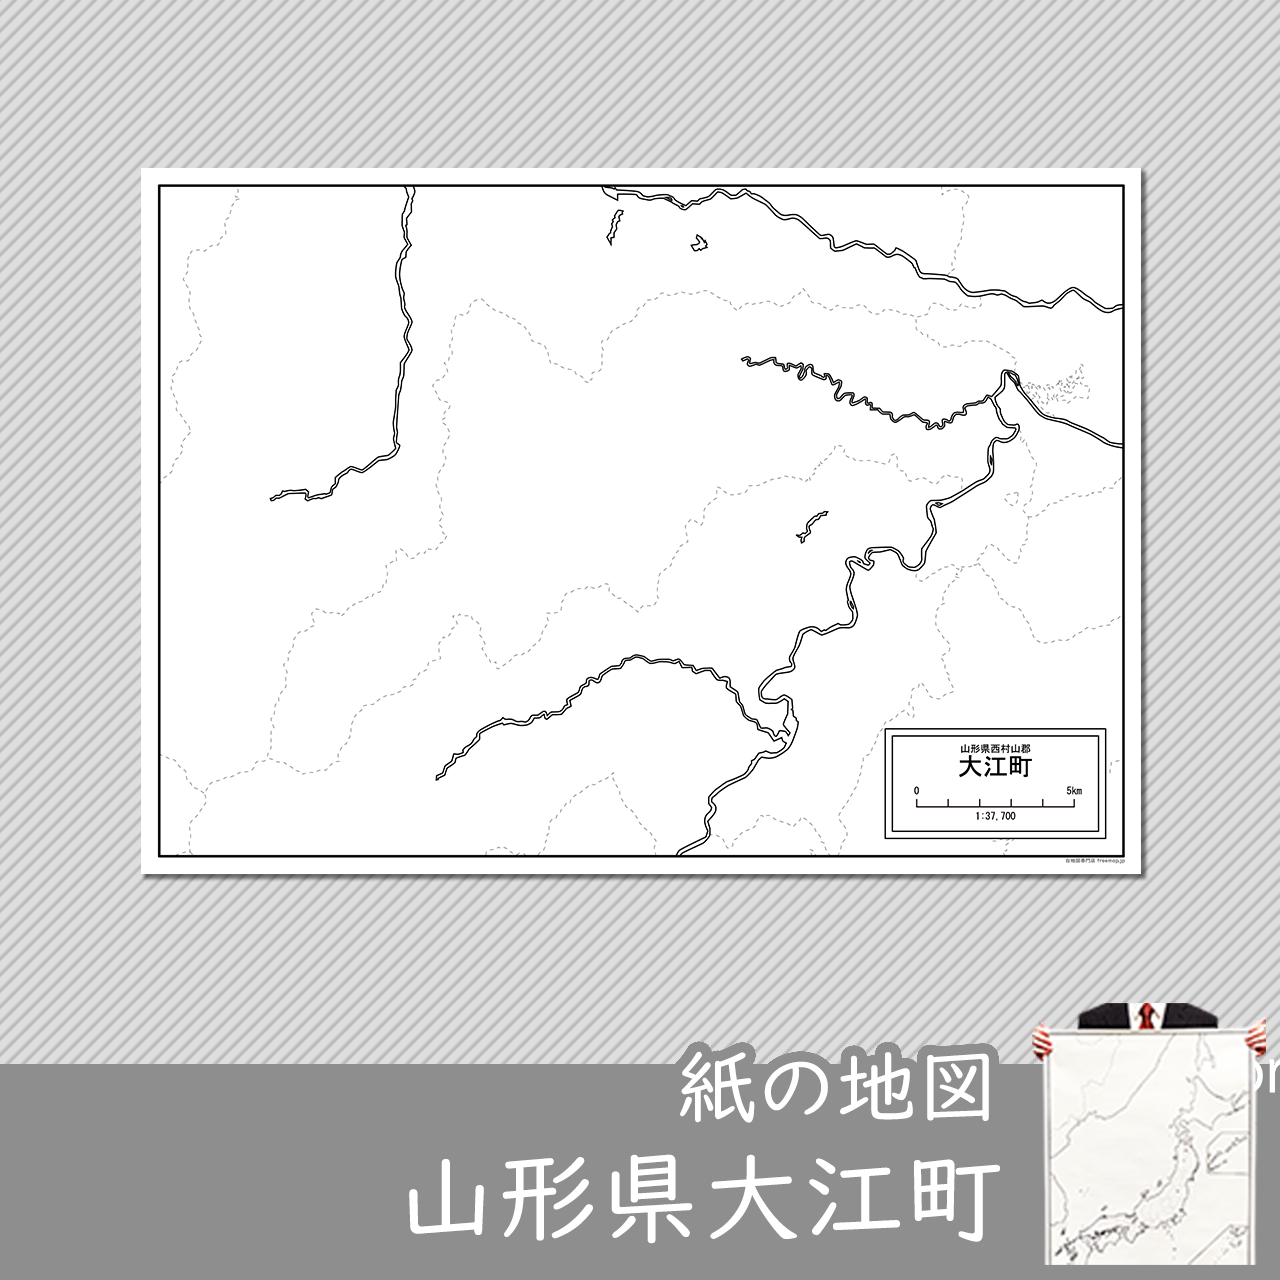 大江町の紙の白地図のサムネイル